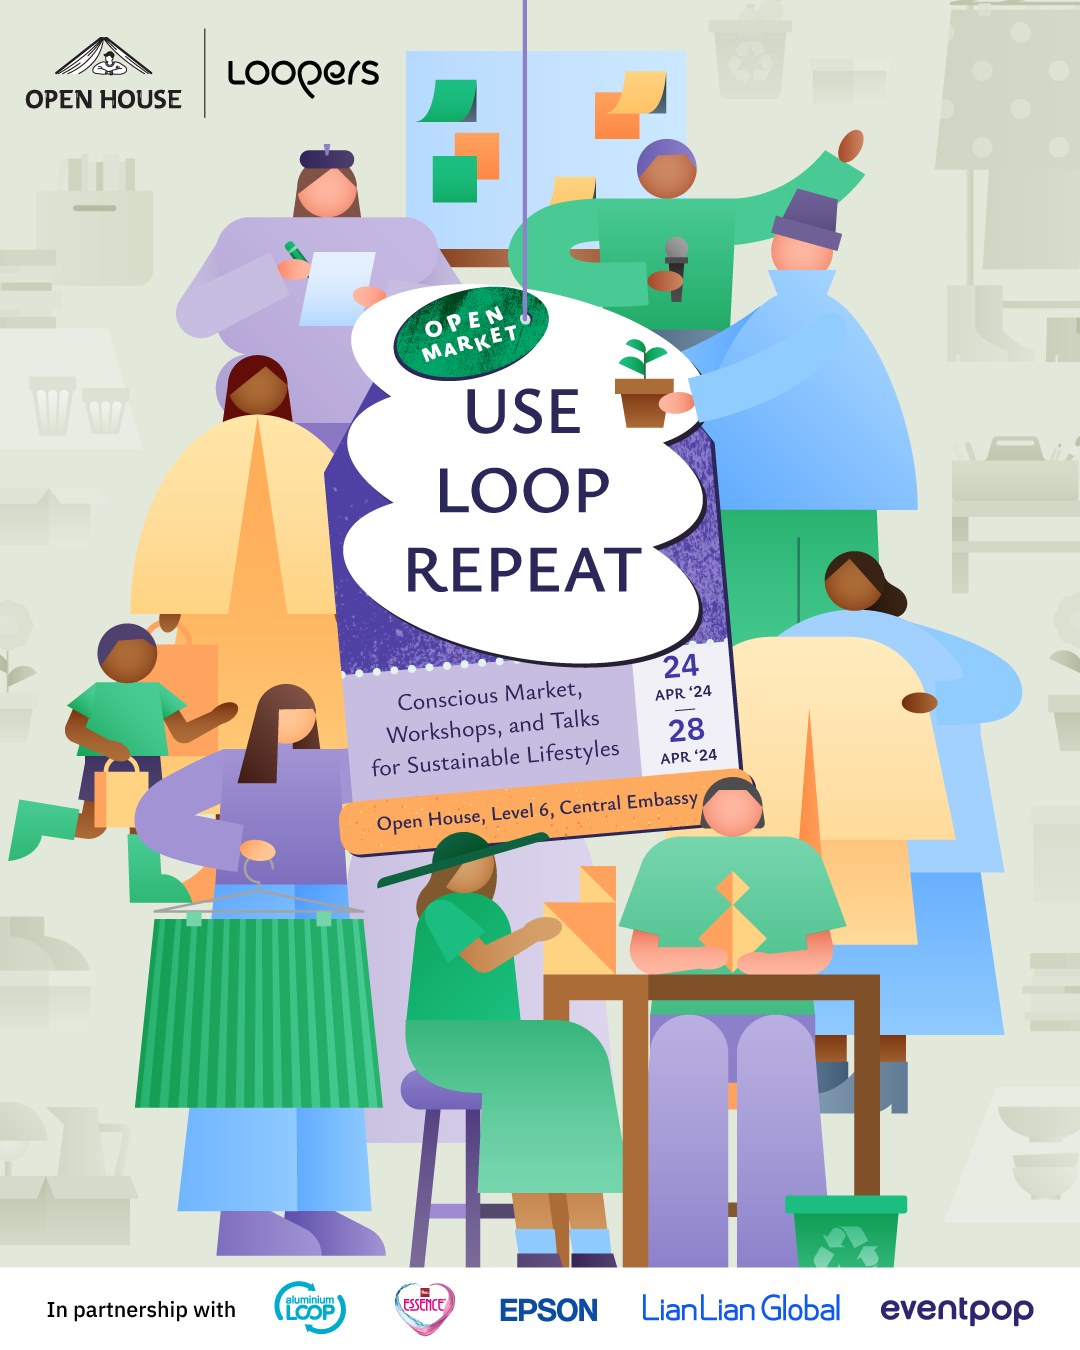 งาน Event เพื่อความยั่งยืน "USE LOOP REPEAT" โดย Loopers